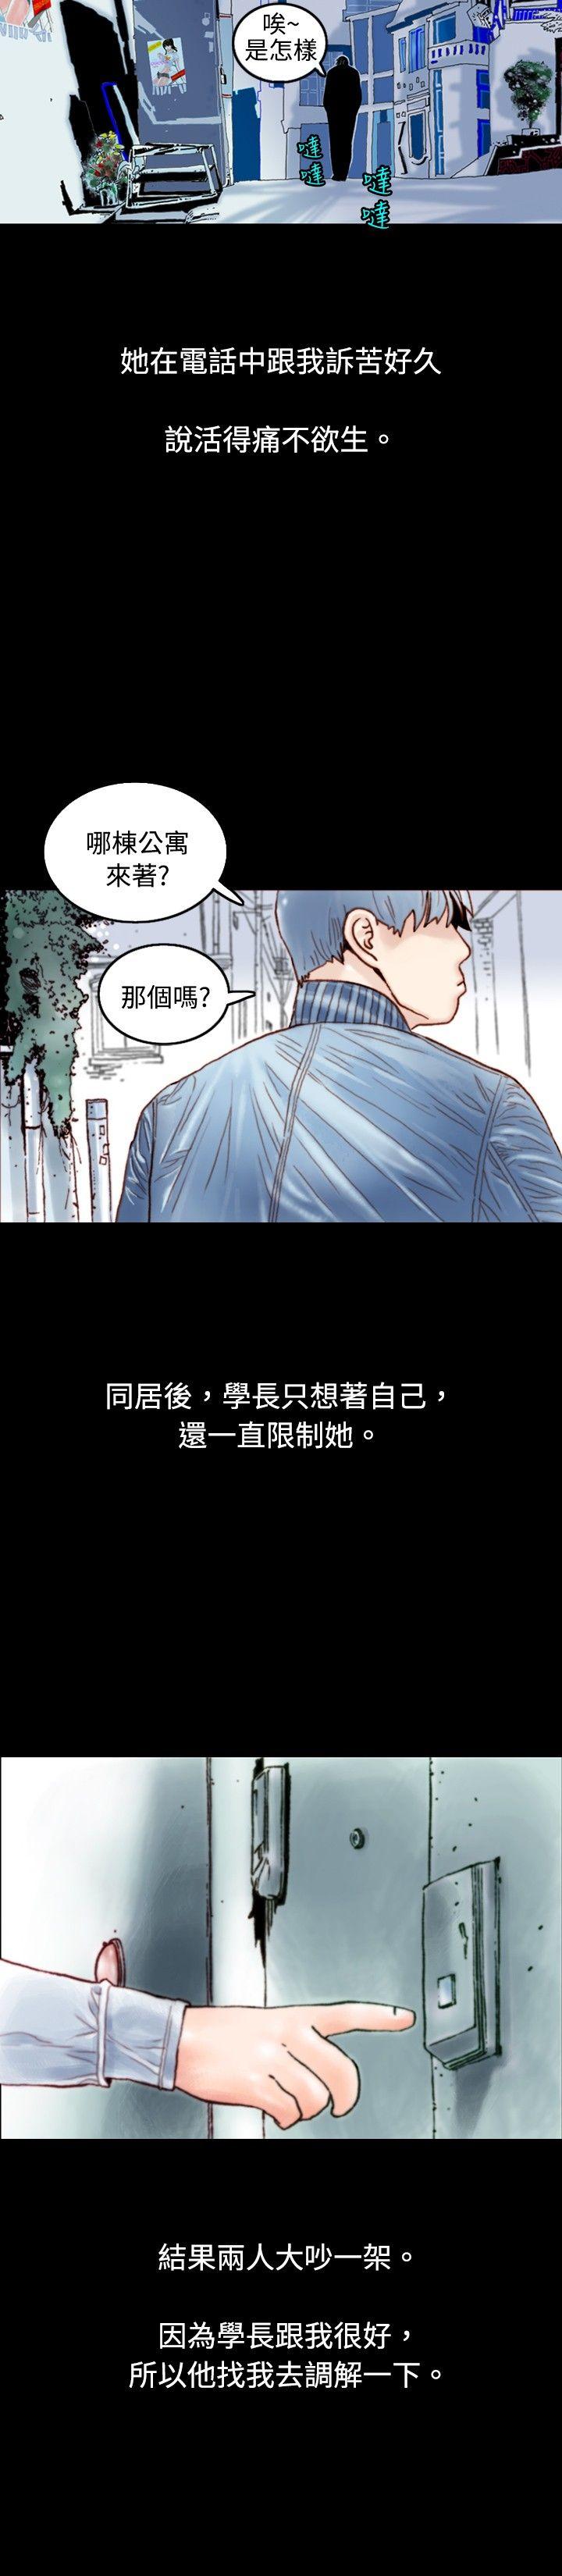 秘密Story  危险关係(上) 漫画图片11.jpg